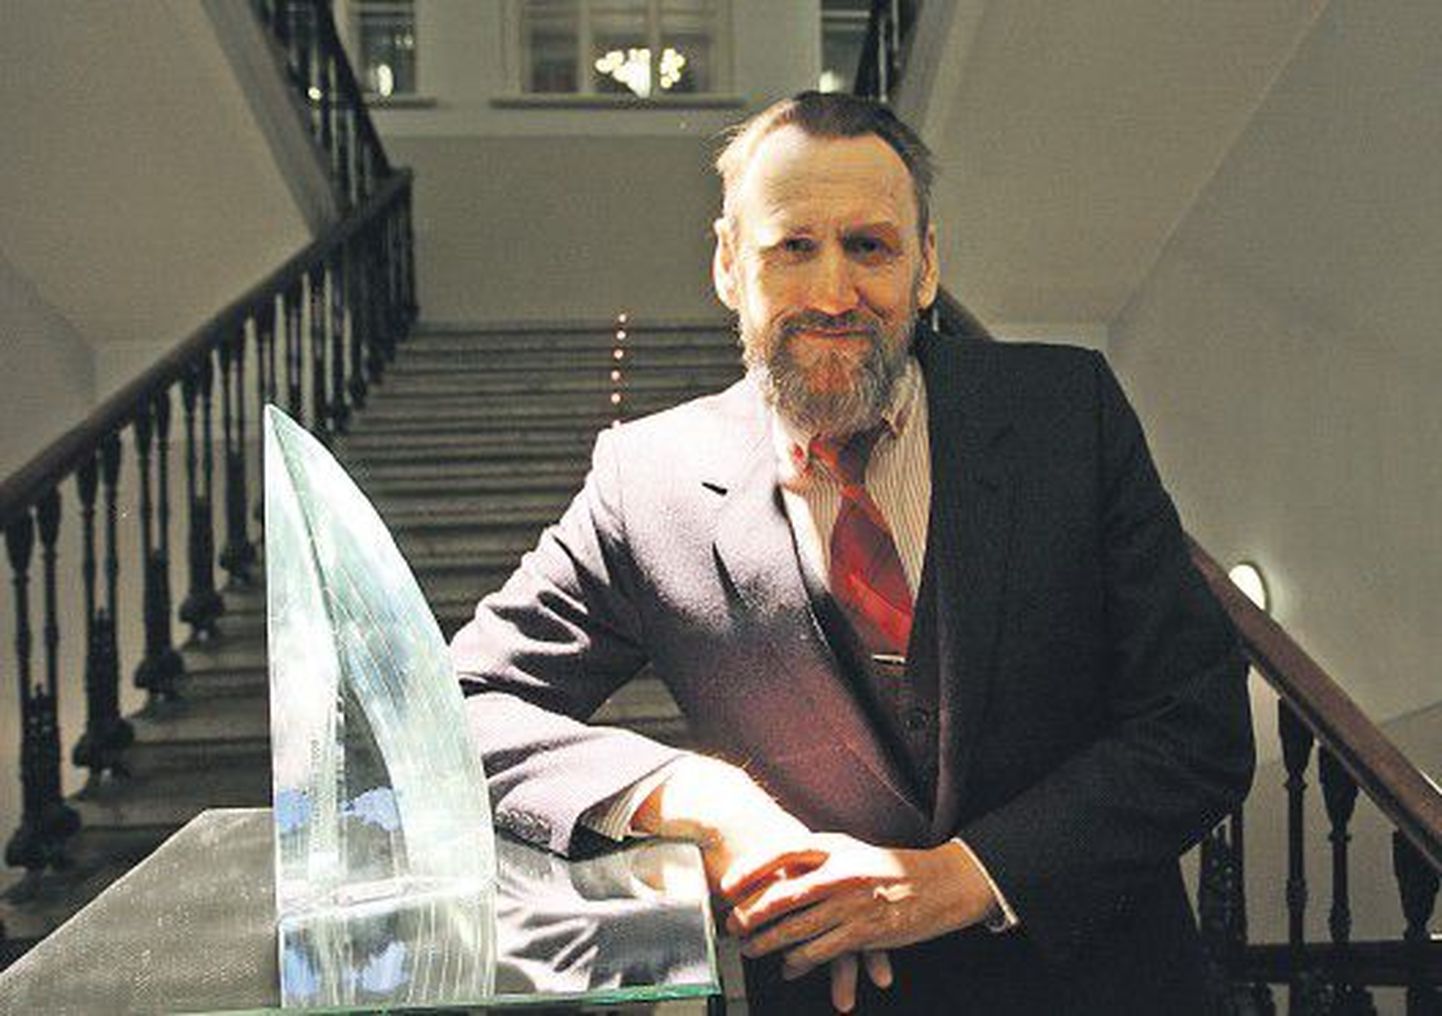 Для Сергея Викентьева скульптура Иво Лилля стала первой наградой за его работу.